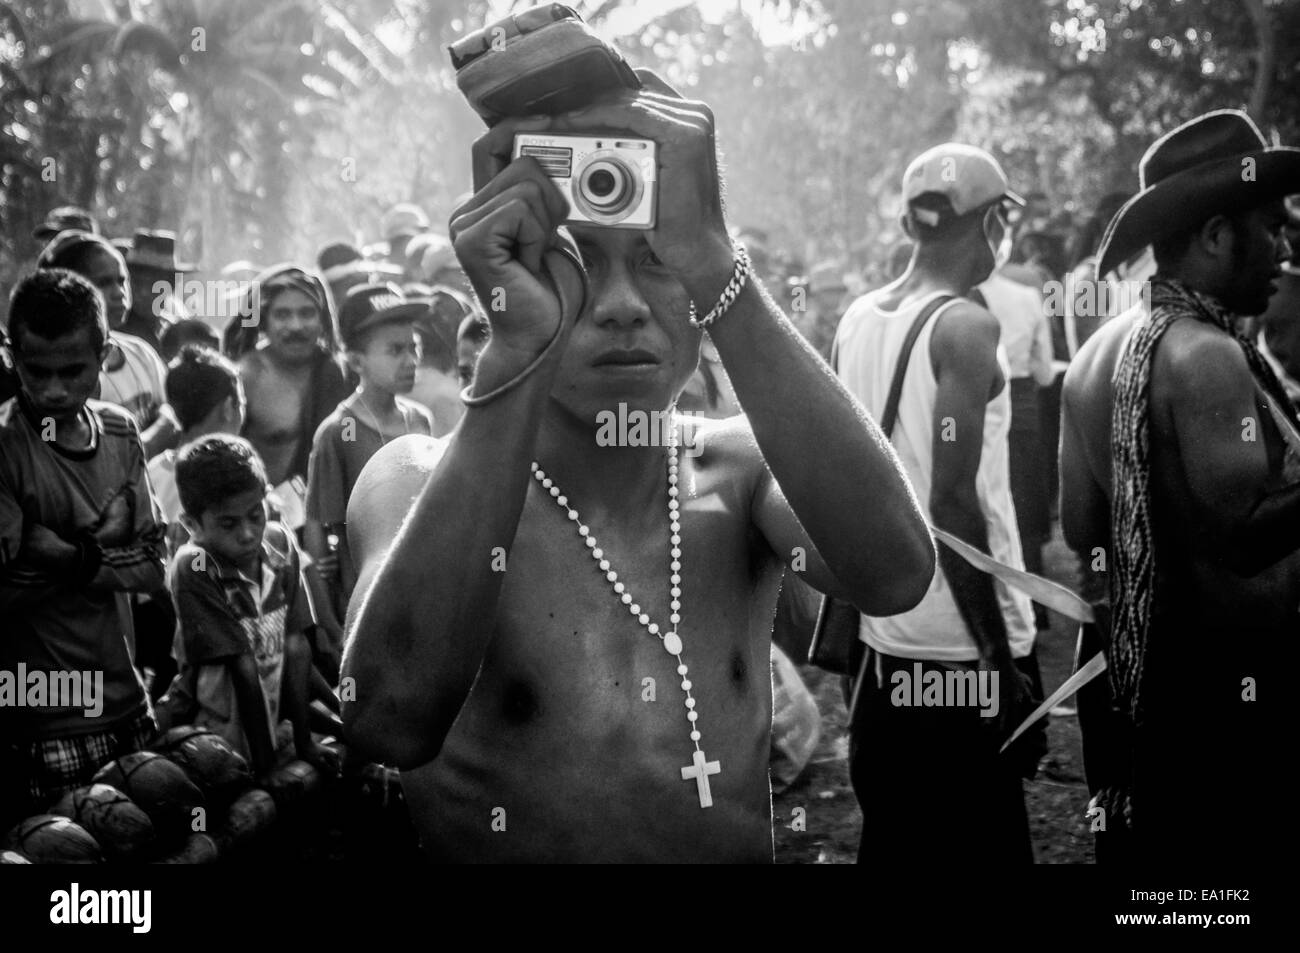 Un giovane che scatta fotografie durante un evento culturale nel villaggio di Lewotolok sul pendio del vulcano Lewotolok nell'isola di Lembata, Indonesia. Foto Stock